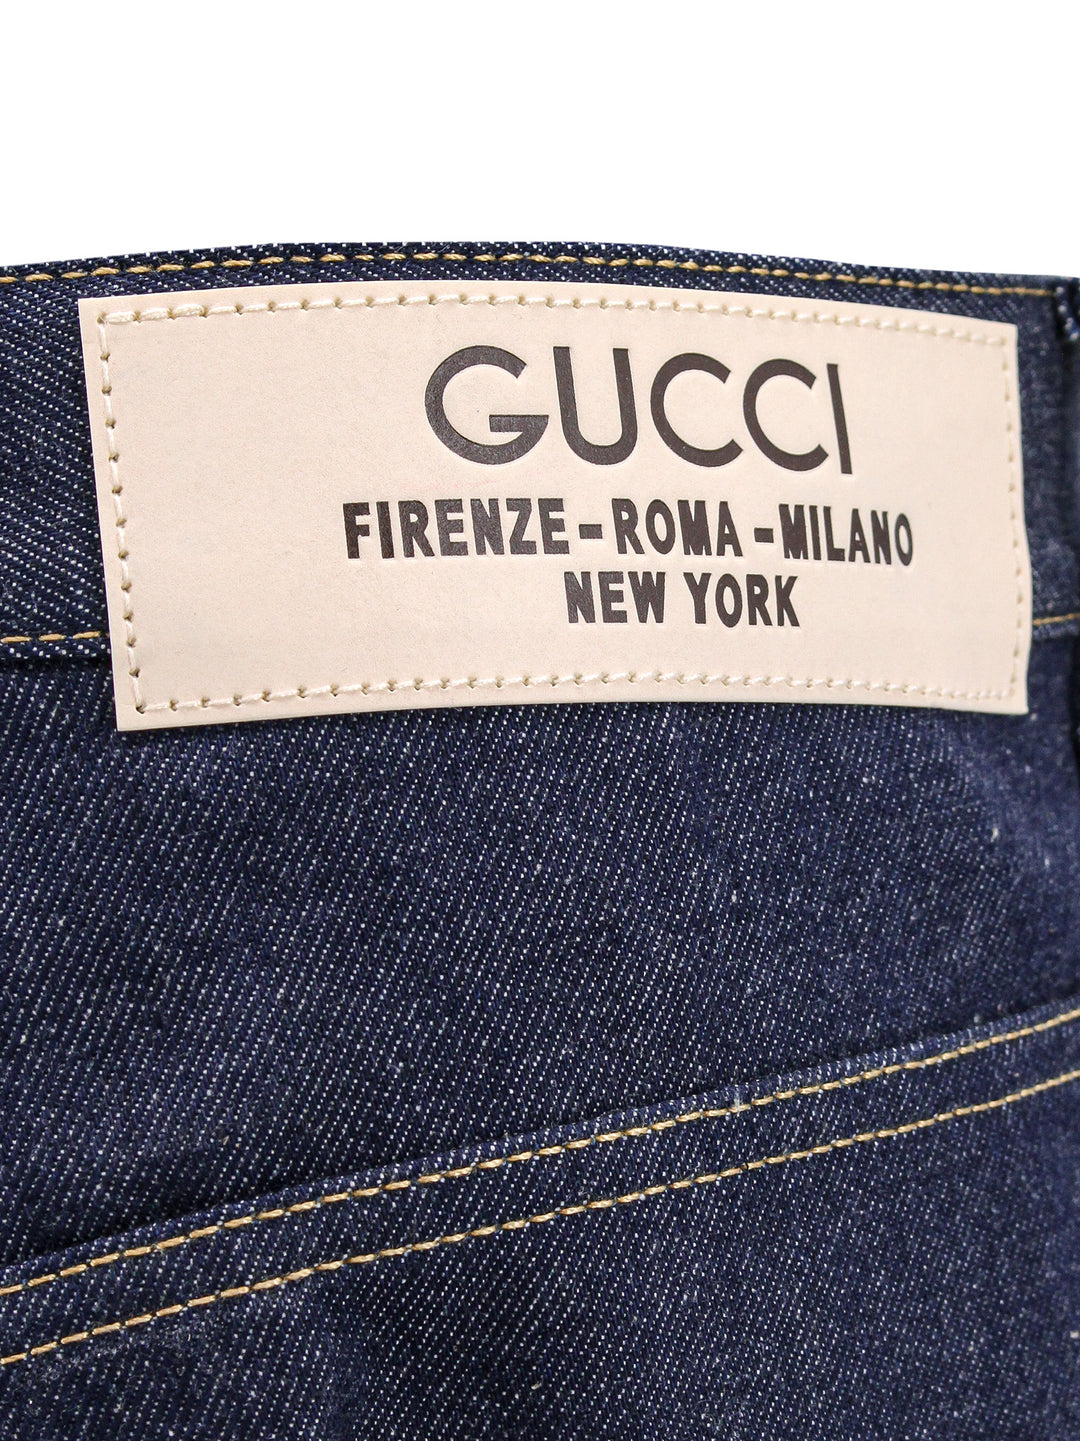 Jeans in cotone con etichetta Gucci City